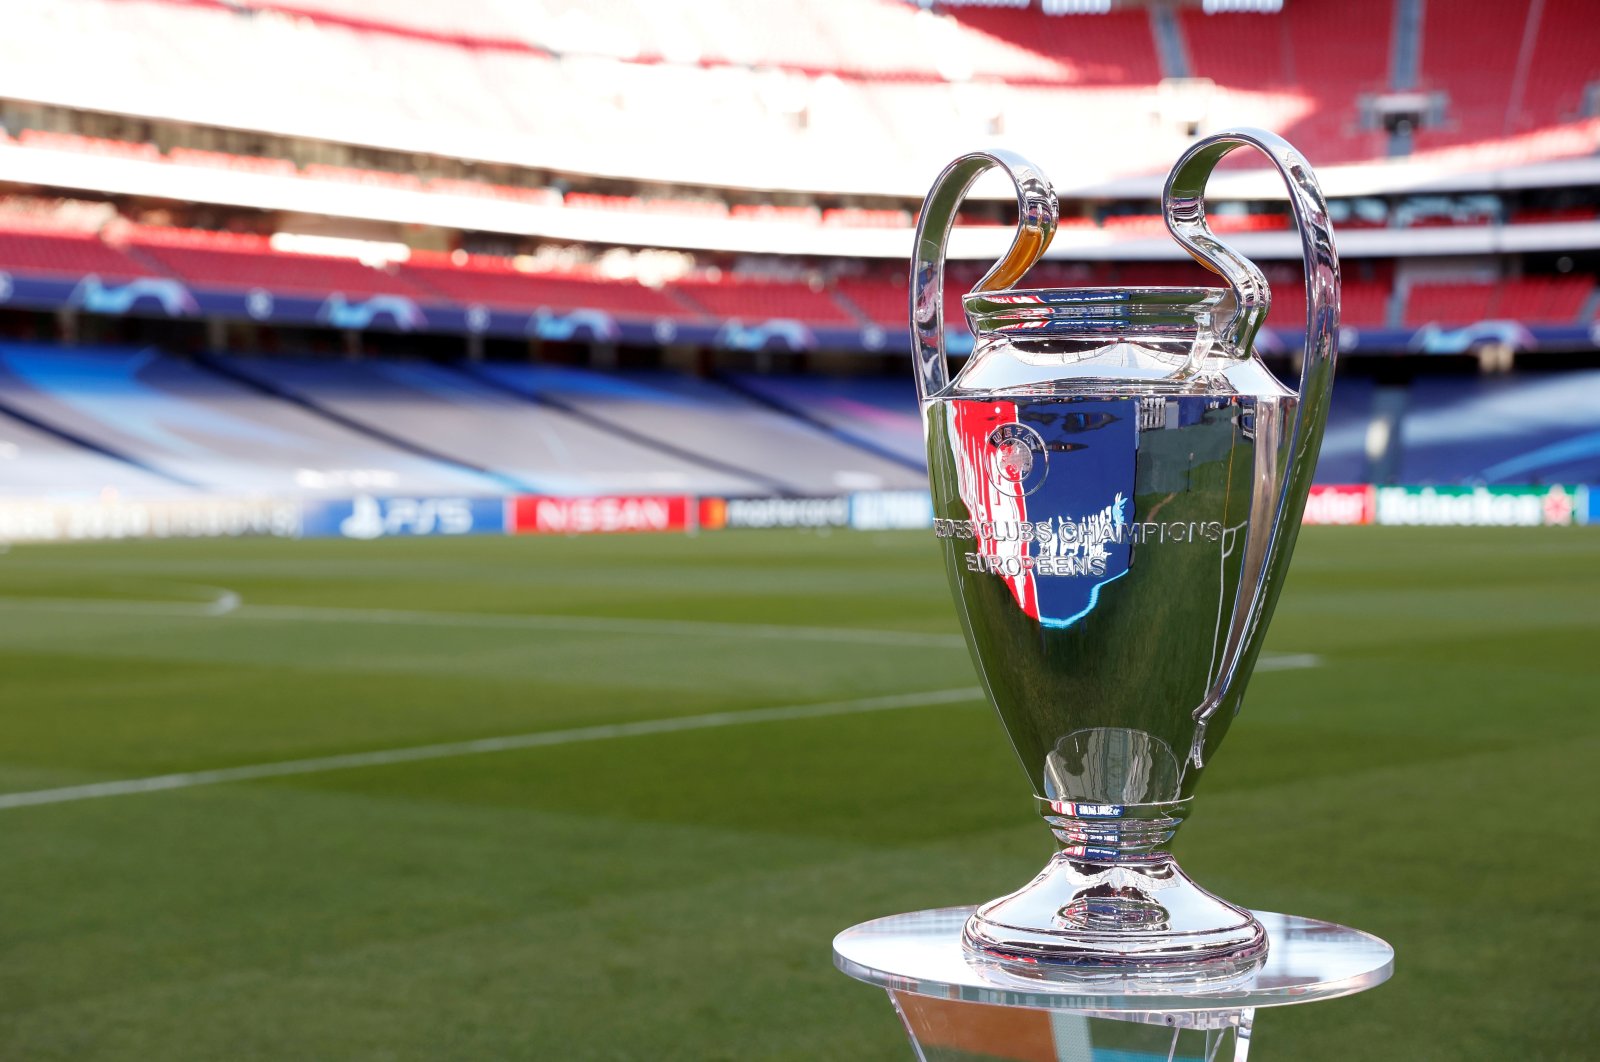 The Champions League trophy is seen at the Estadio da Luz, Lisbon, Portugal, Aug. 23, 2020. (Reuters Photo)